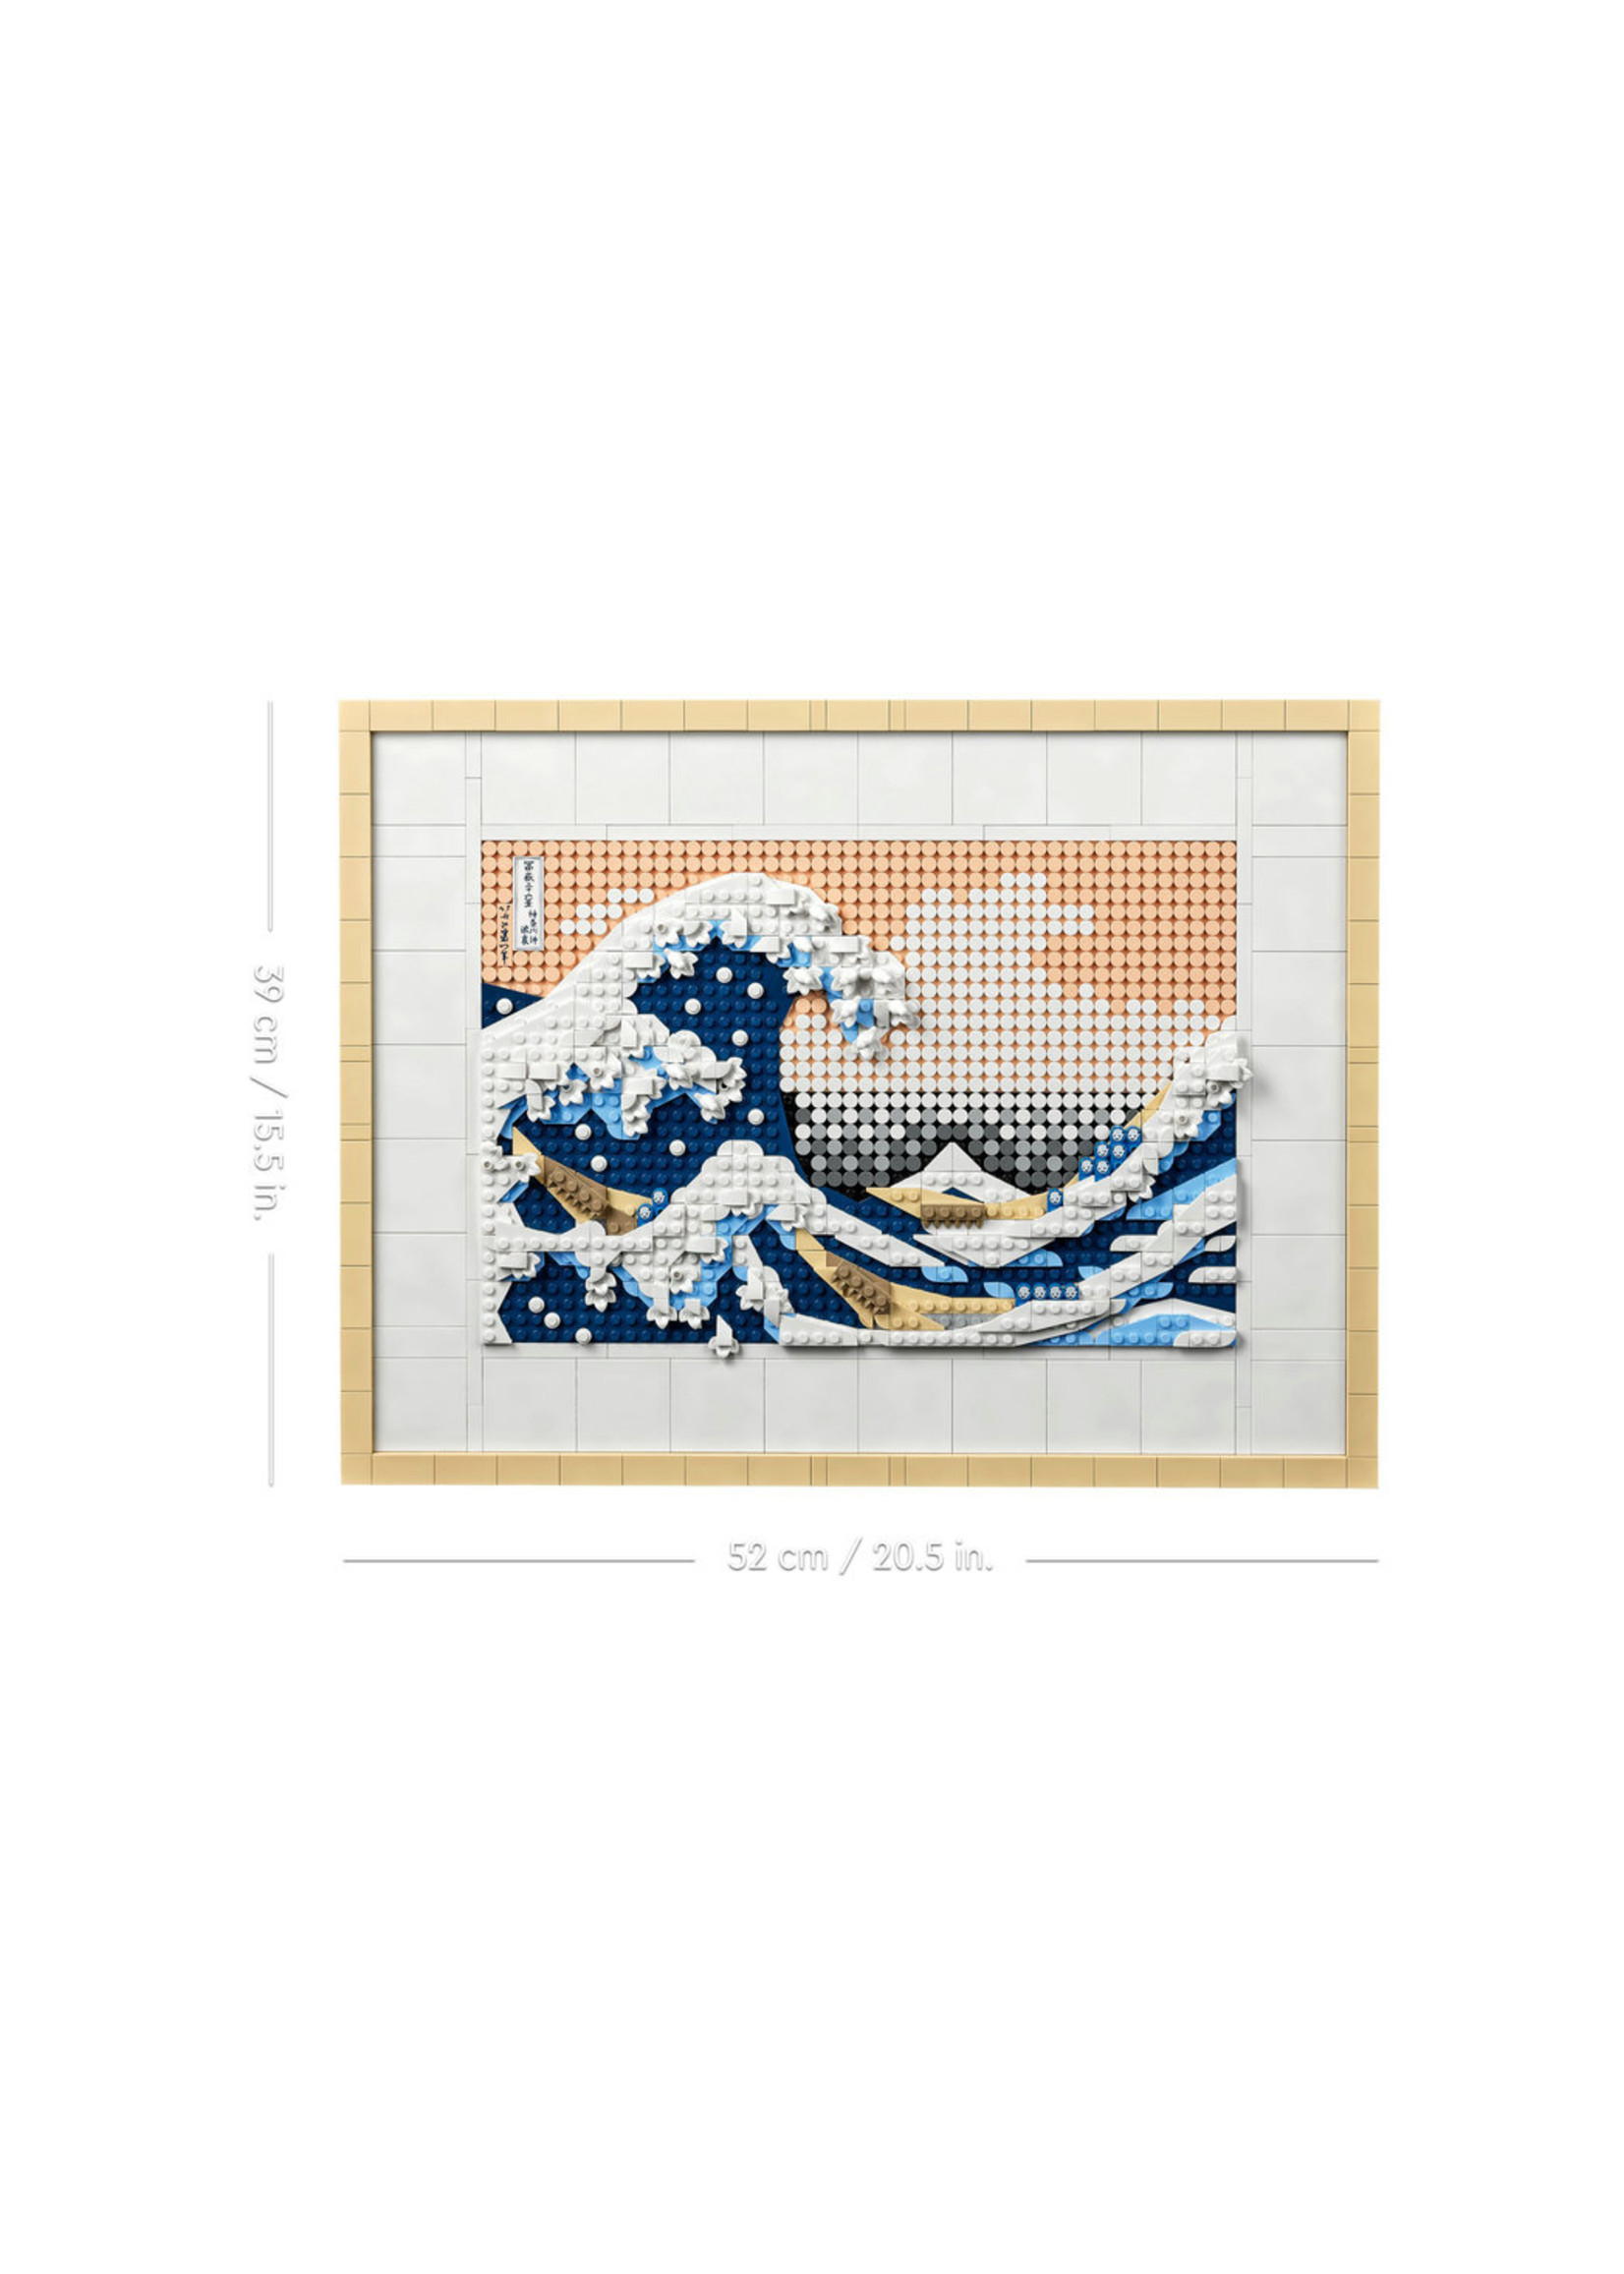 LEGO 31208 - Hokusai - The Great Wave